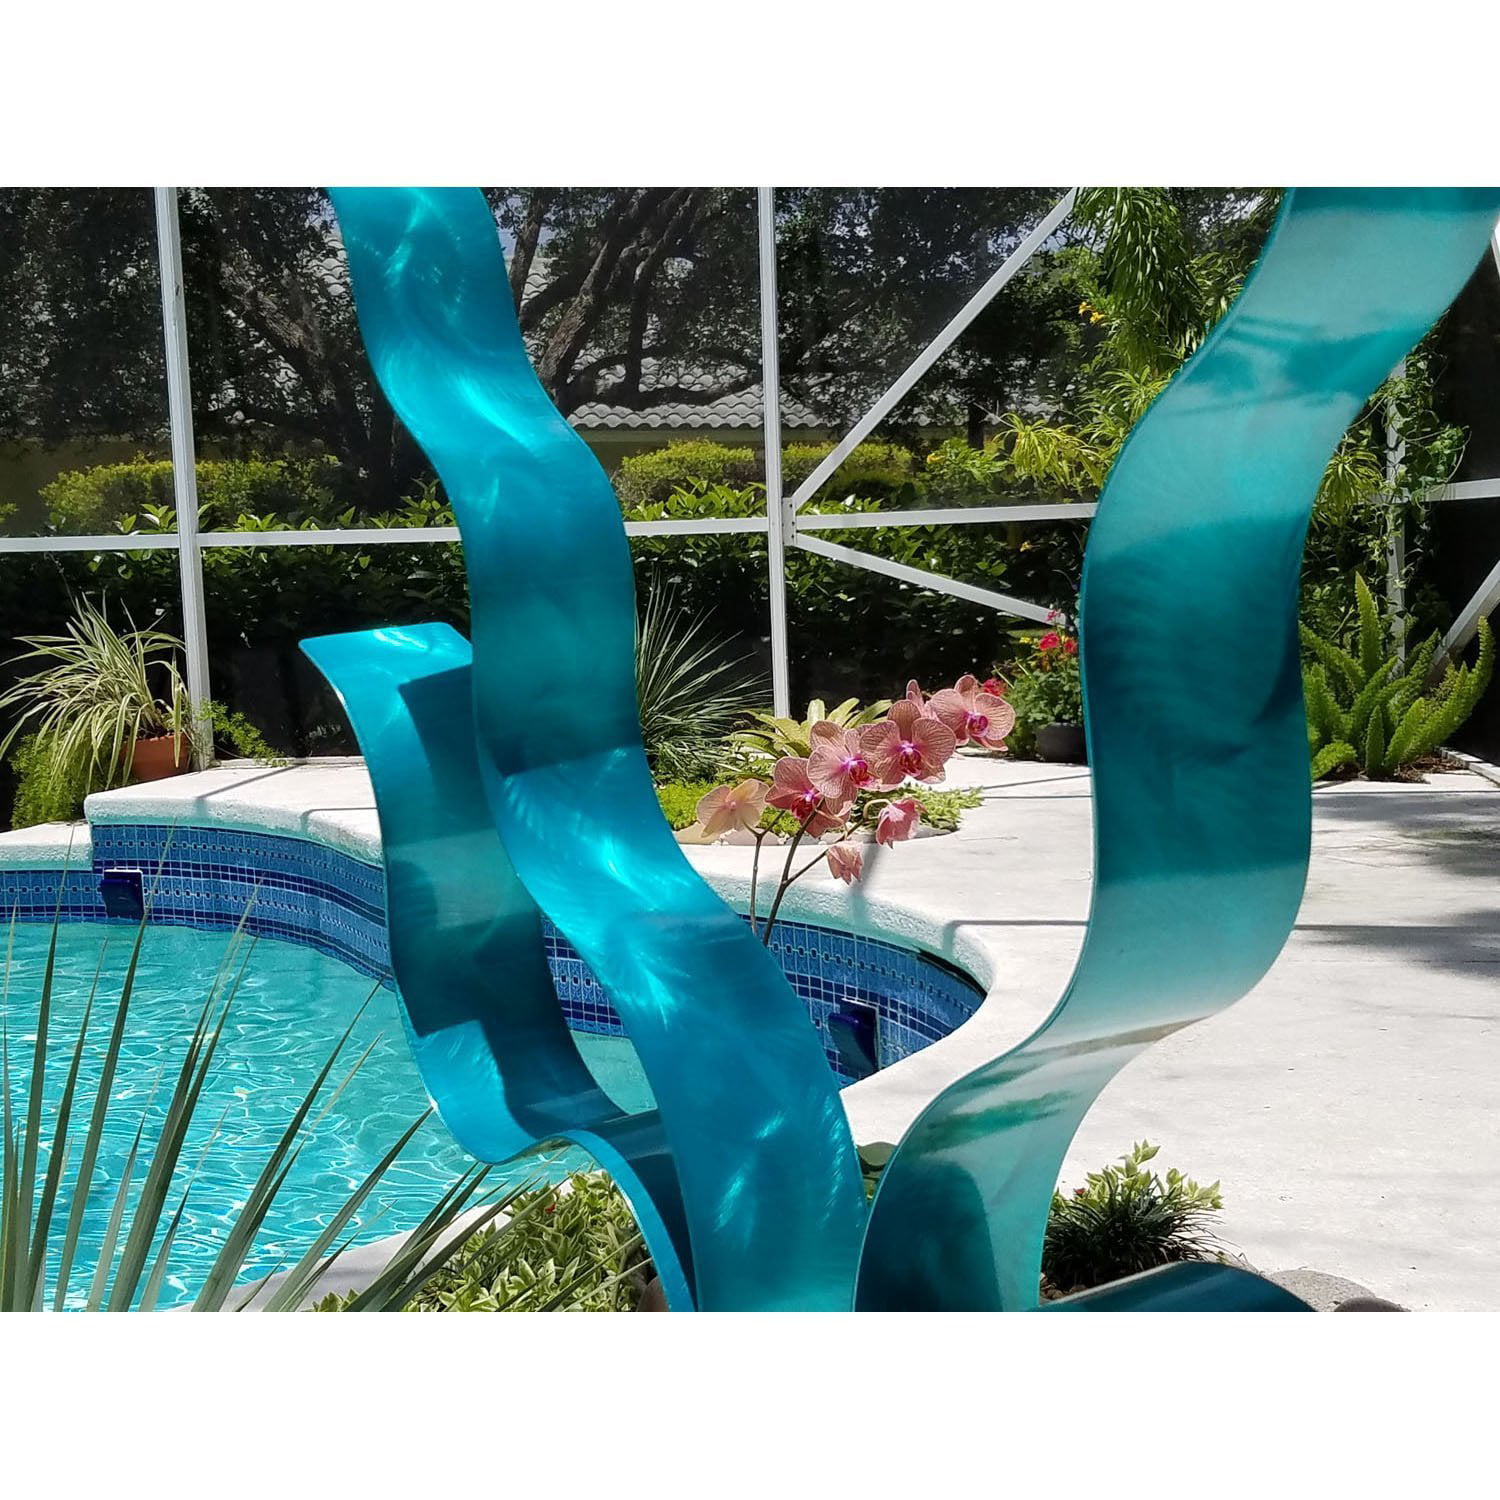 Statements2000 Abstract Metal Sculpture Aqua Blue Indoor Outdoor Yard Decor  by Jon Allen 